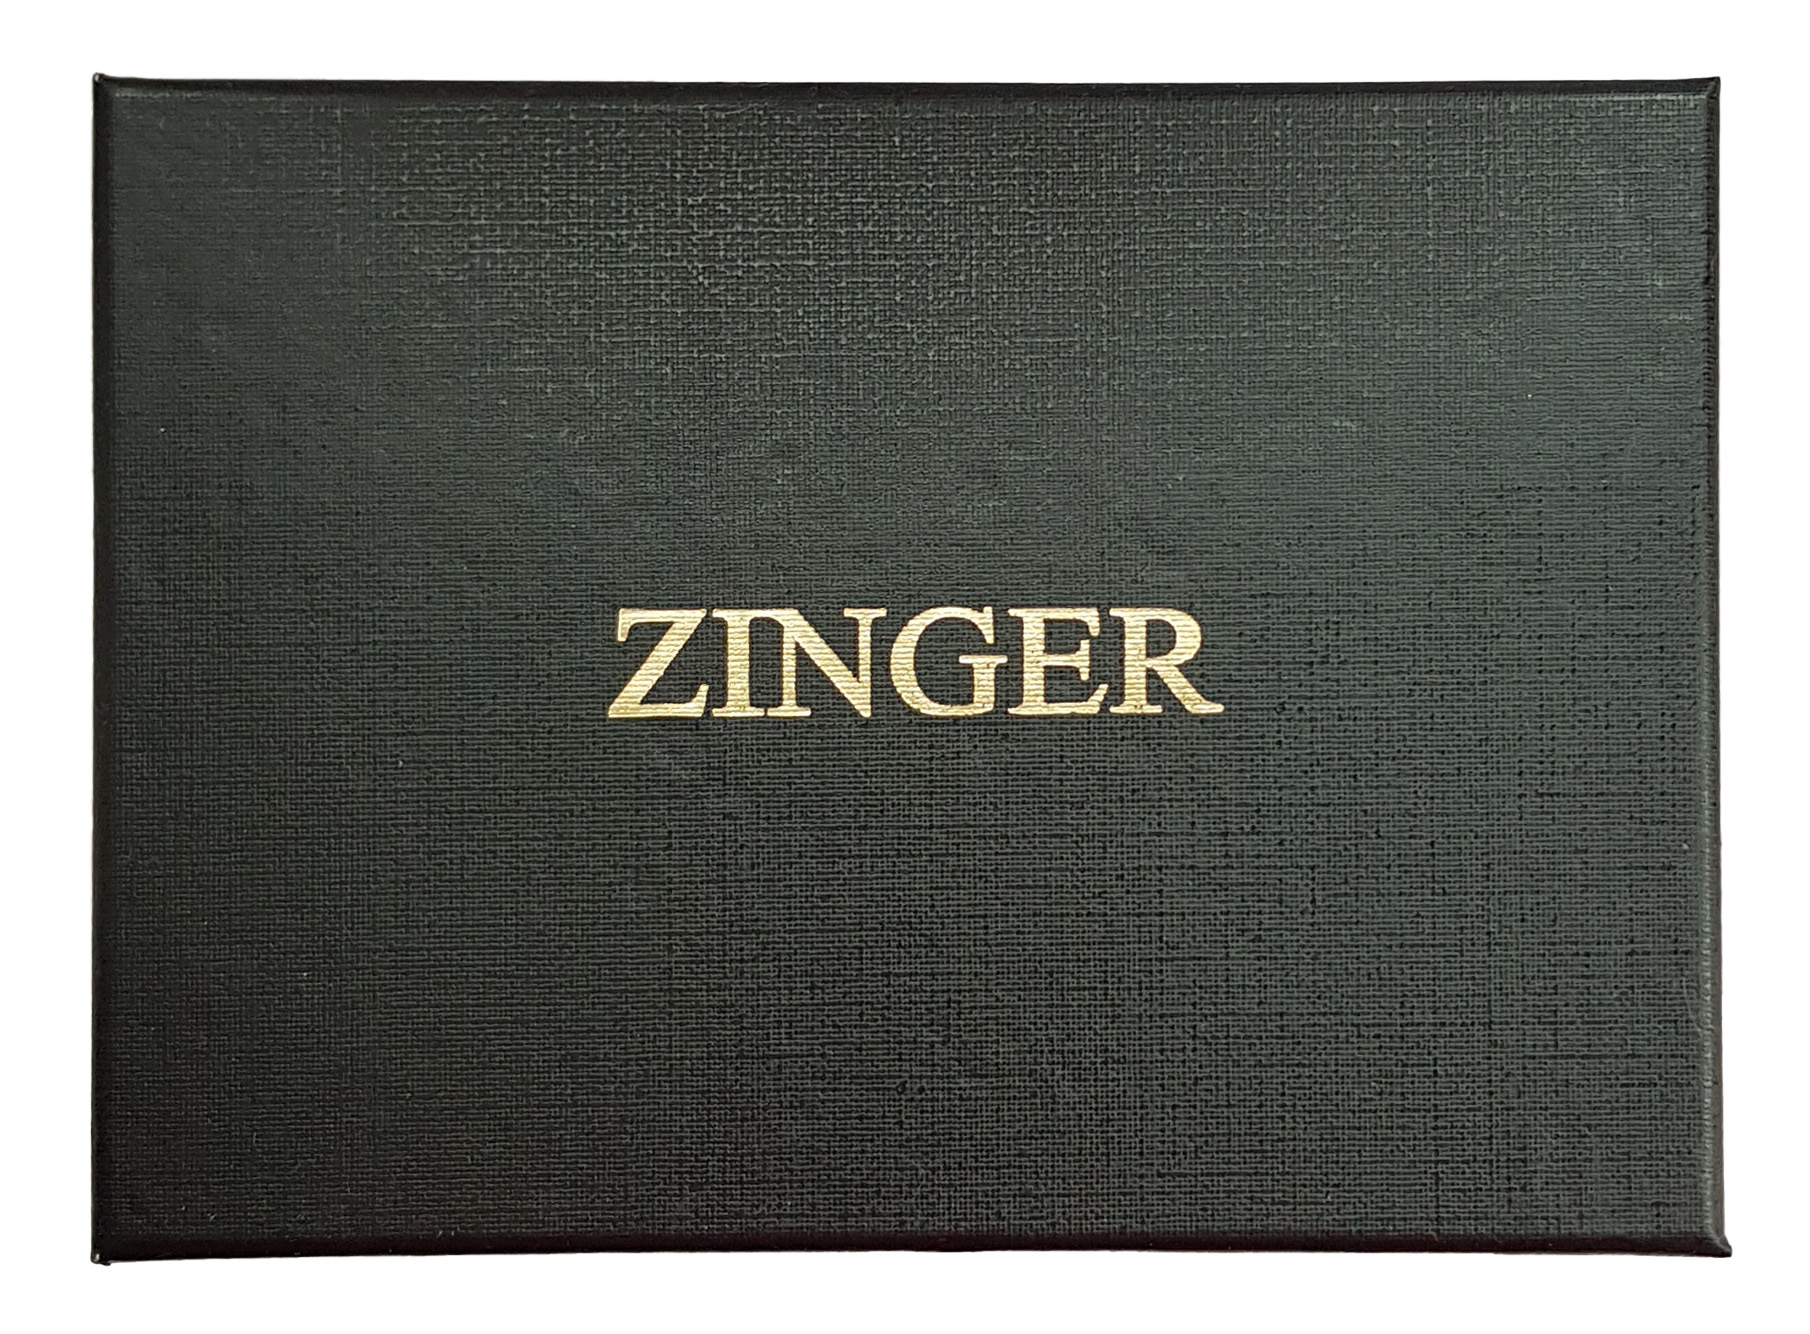 Маникюрный набор Zinger Premium-качества бордовый 9 предметов + пинцет набор для выпечки пазл regent inox easy 6 предметов